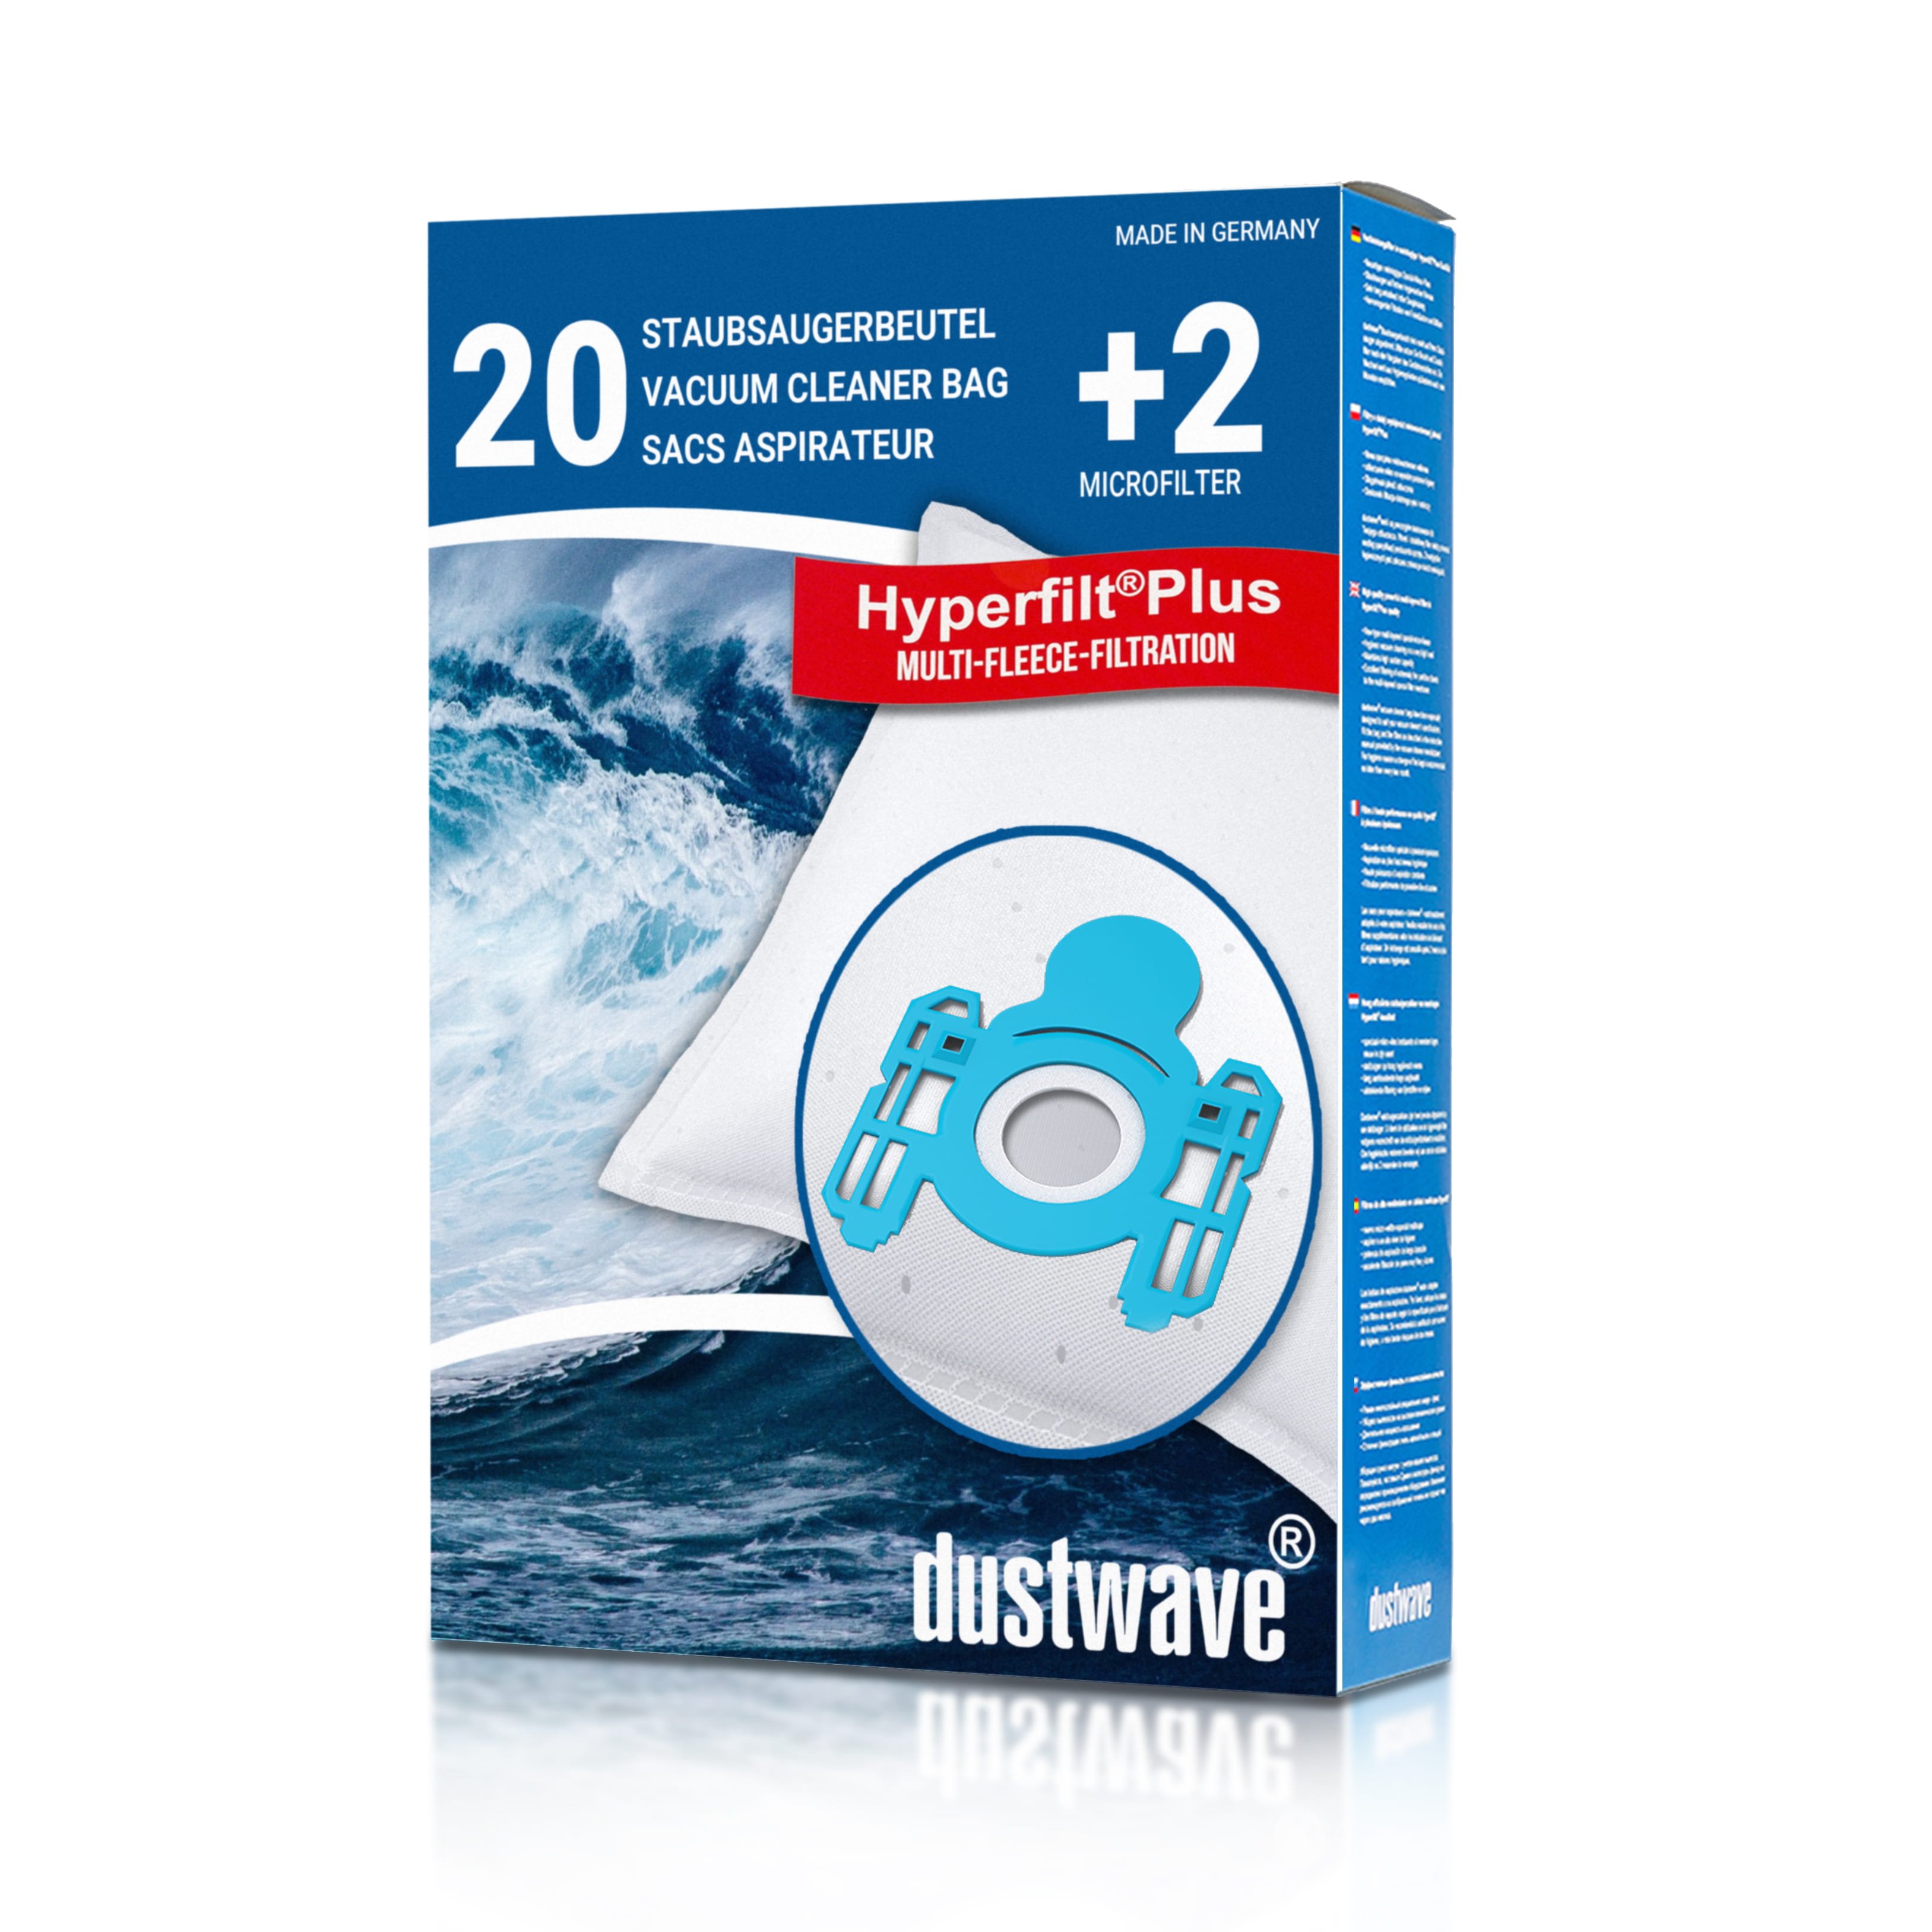 Dustwave® 20 Staubsaugerbeutel für AEG Vampyr CE 660 / 660 NZ / 660 NZ - hocheffizient, mehrlagiges Mikrovlies mit Hygieneverschluss - Made in Germany